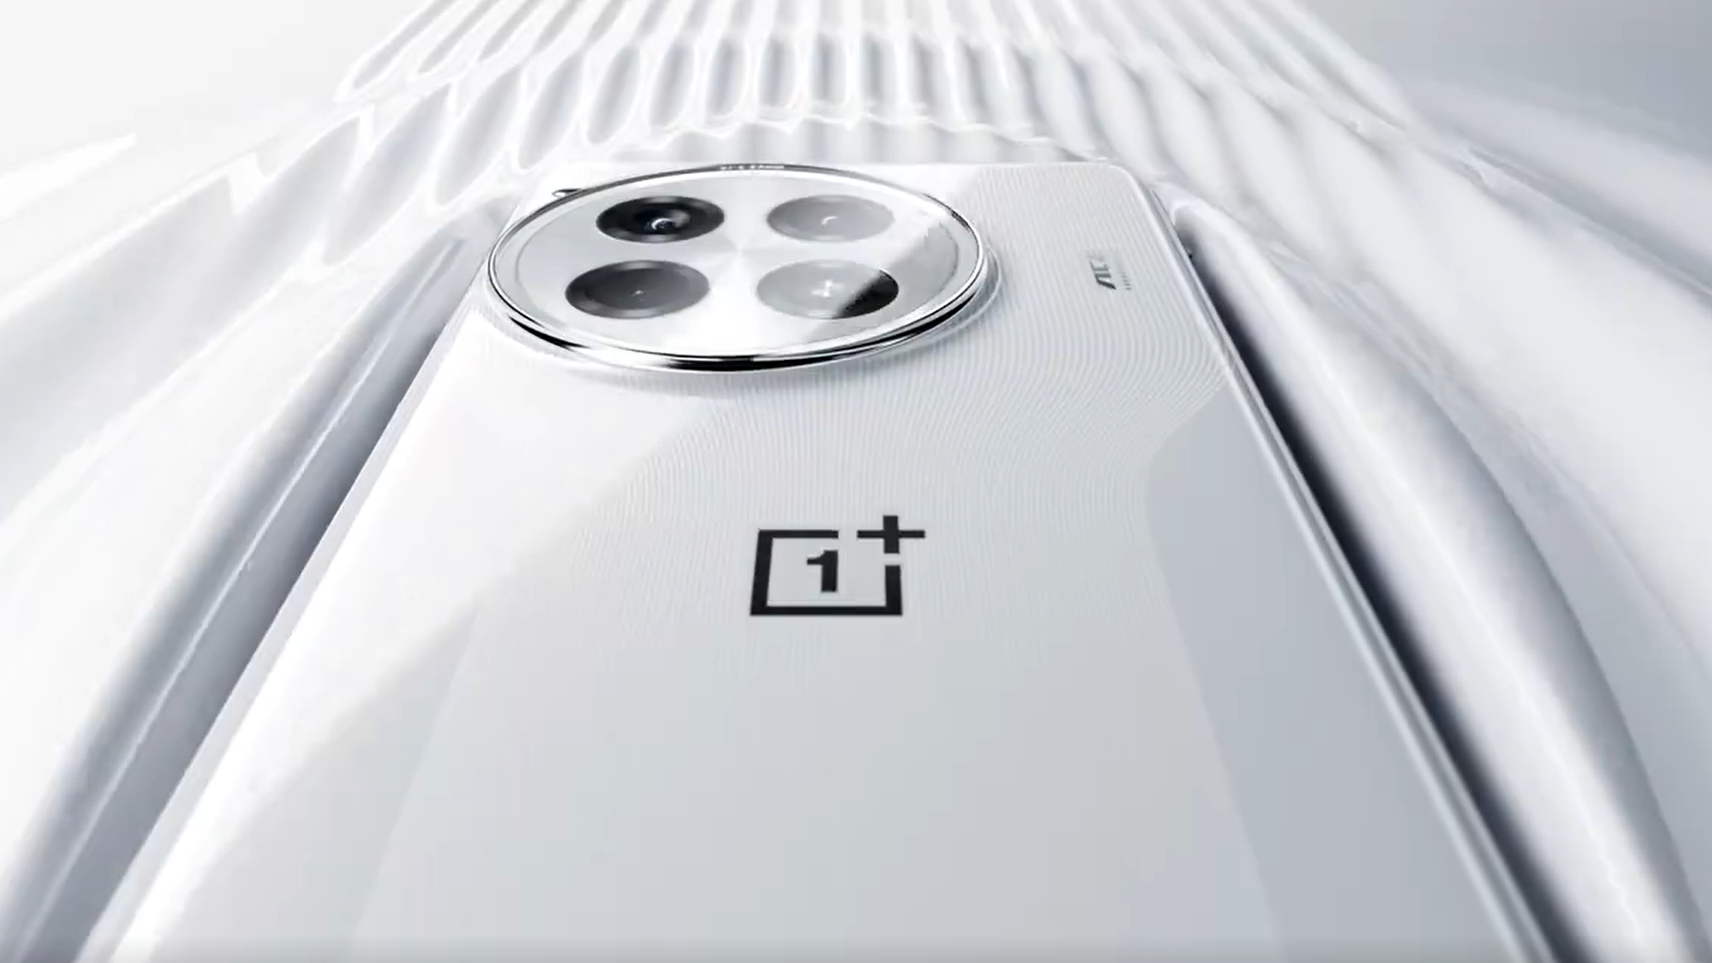 OnePlus verspricht neue Smartphone-Akkus, die auch nach 4 Jahren noch mindestens 80 Prozent ihrer Kapazität behalten